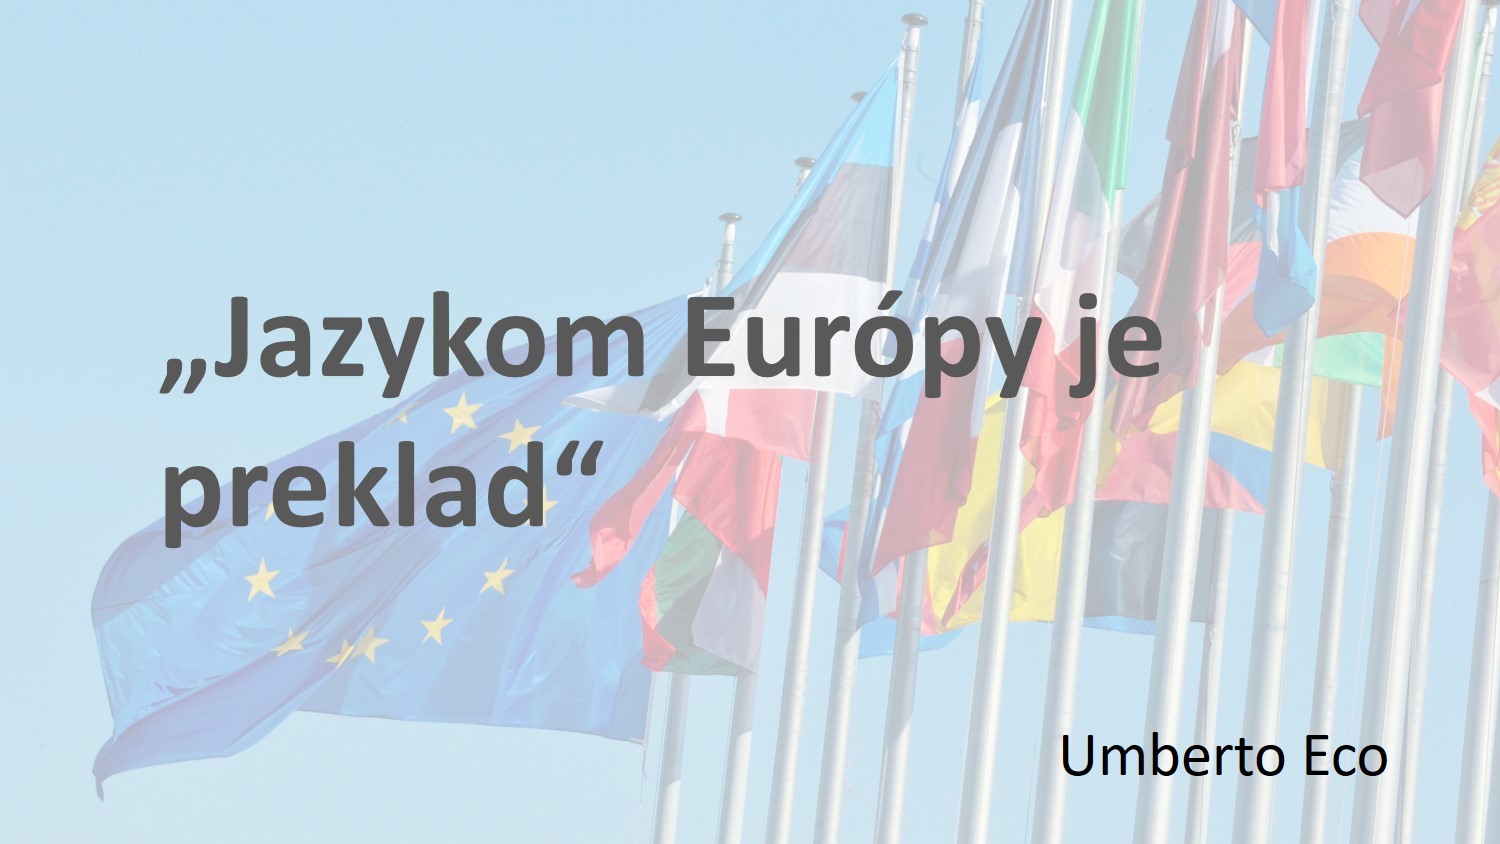 Citát Umberta Eca „Jazykom Európy je preklad“, s európskou vlajkou a niektorými národnými vlajkami v pozadí